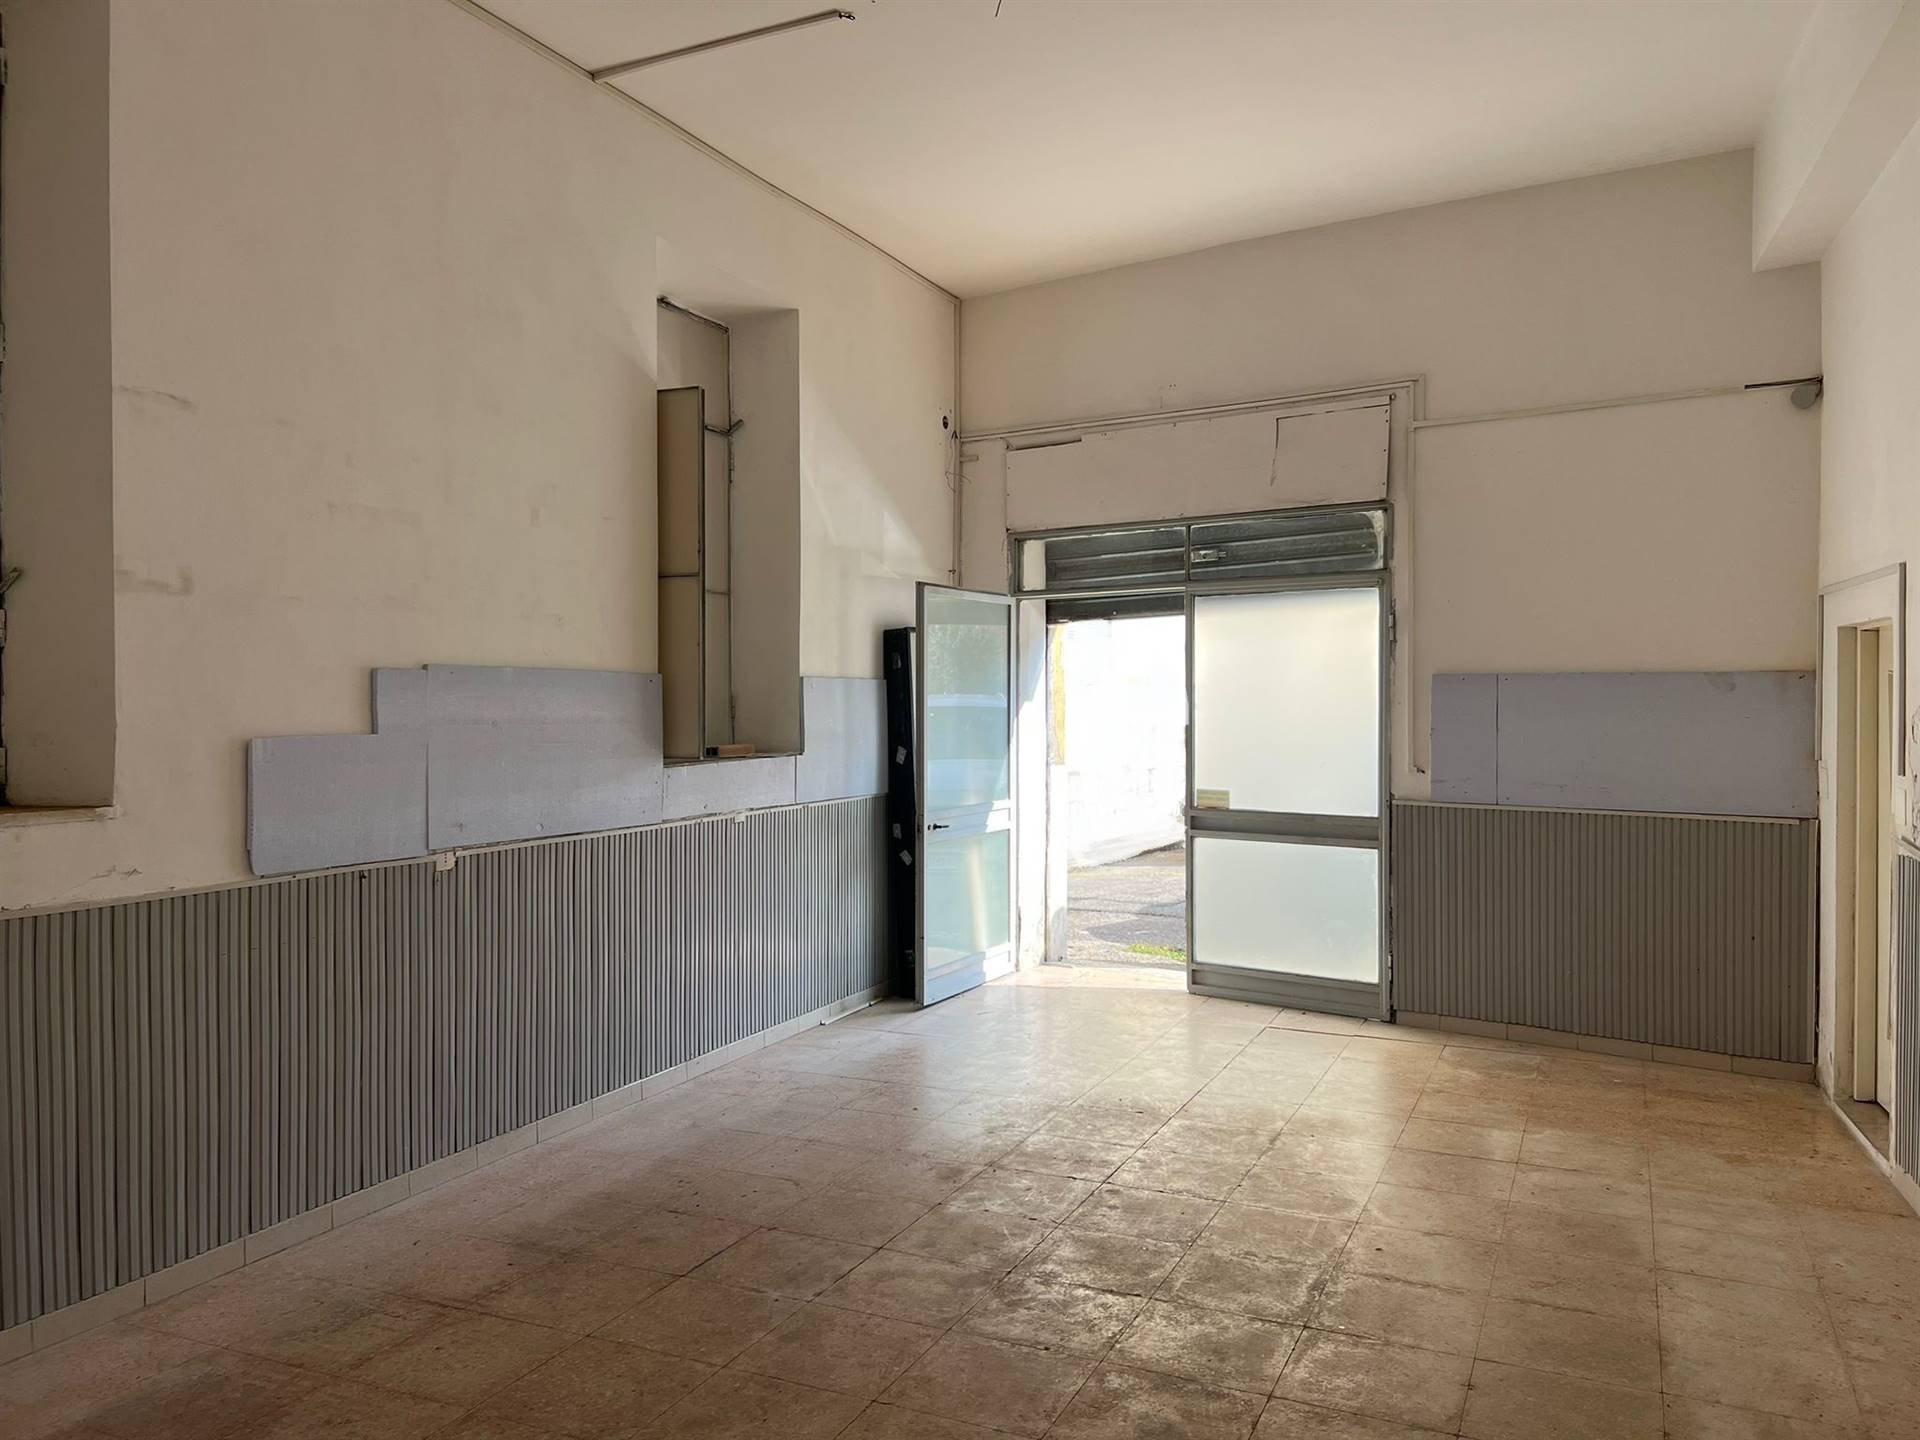 Loft / Openspace in vendita a Terracina, 2 locali, zona Località: CENTRALE, prezzo € 75.000 | CambioCasa.it